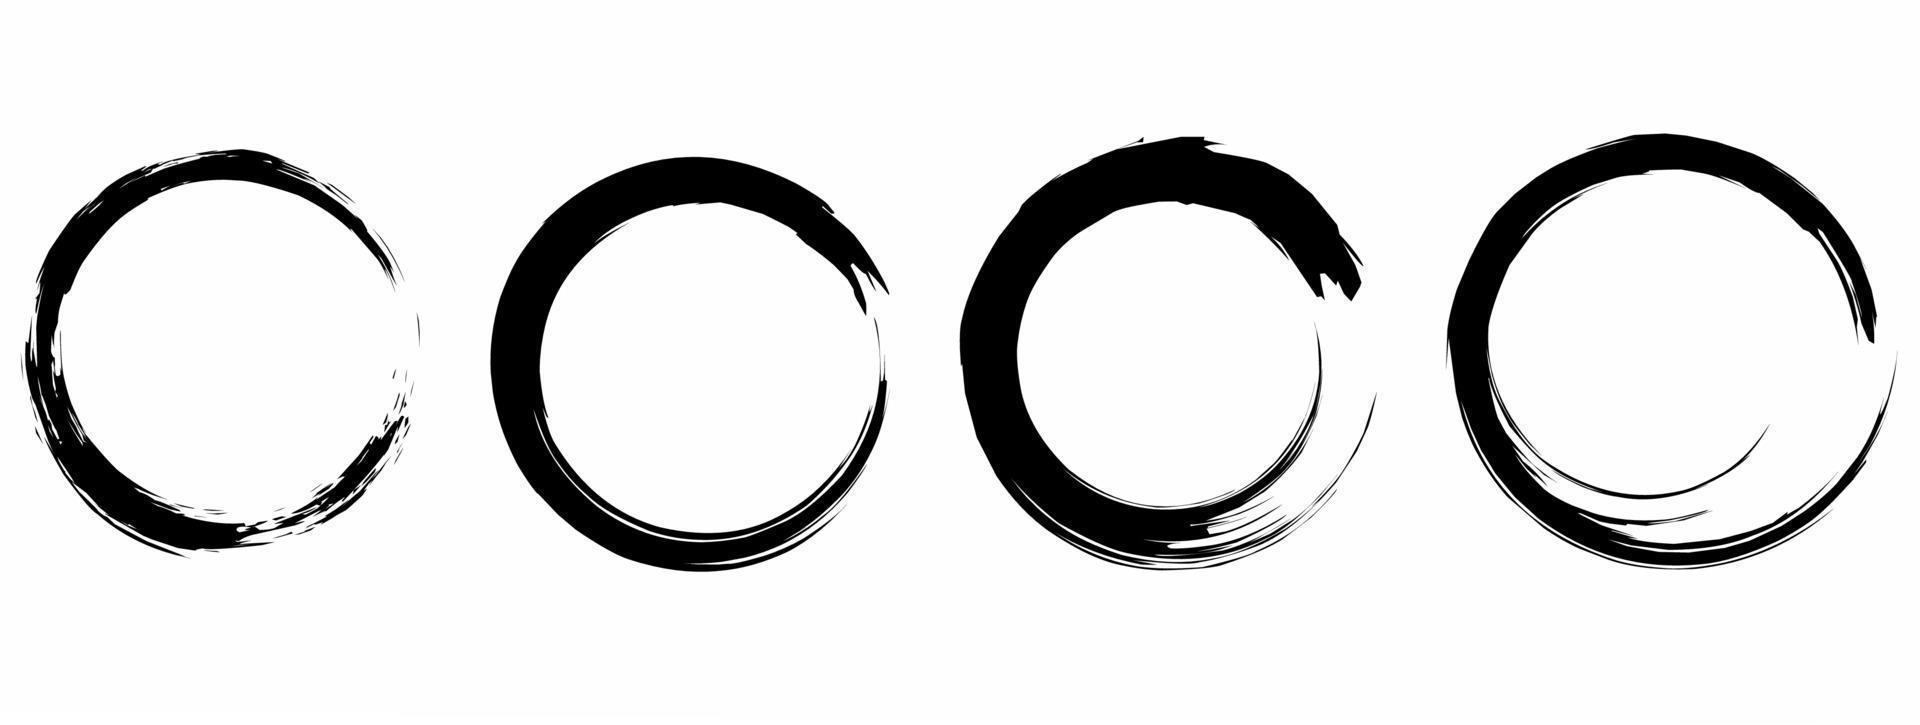 conjunto de círculo enso zen isolado no fundo branco vetor